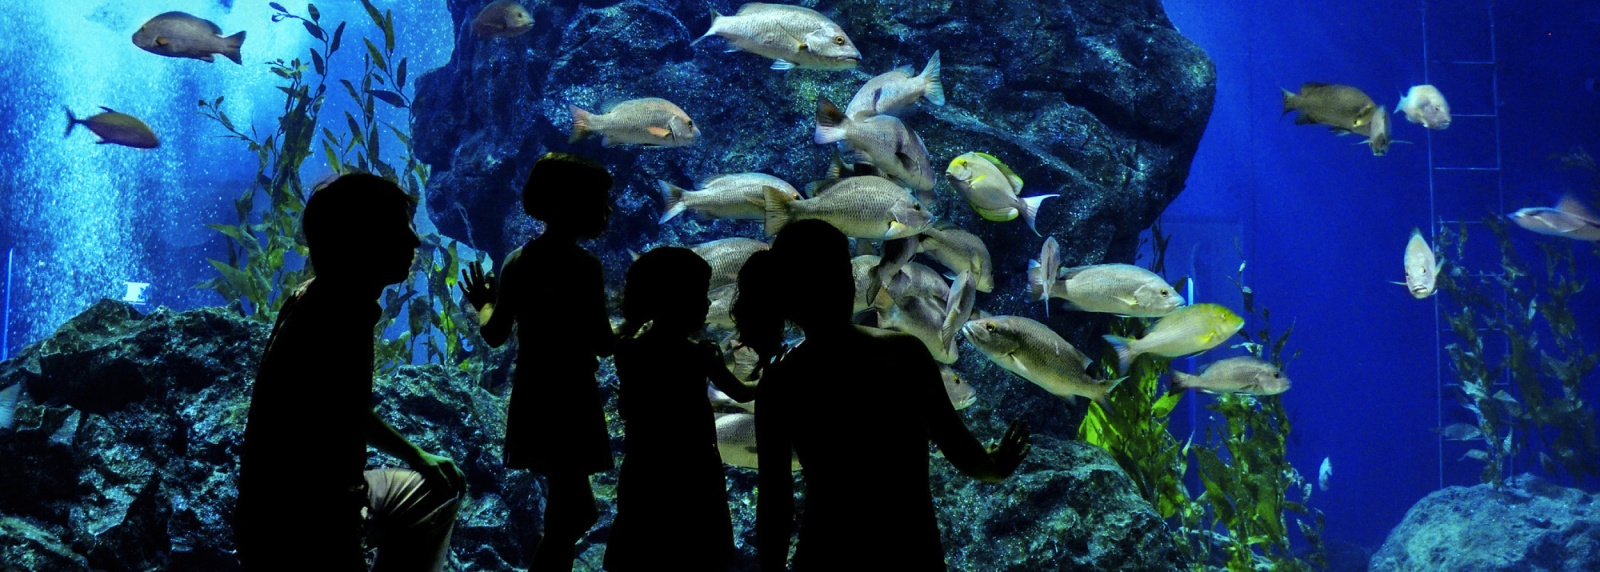 ● Waikiki Aquarium